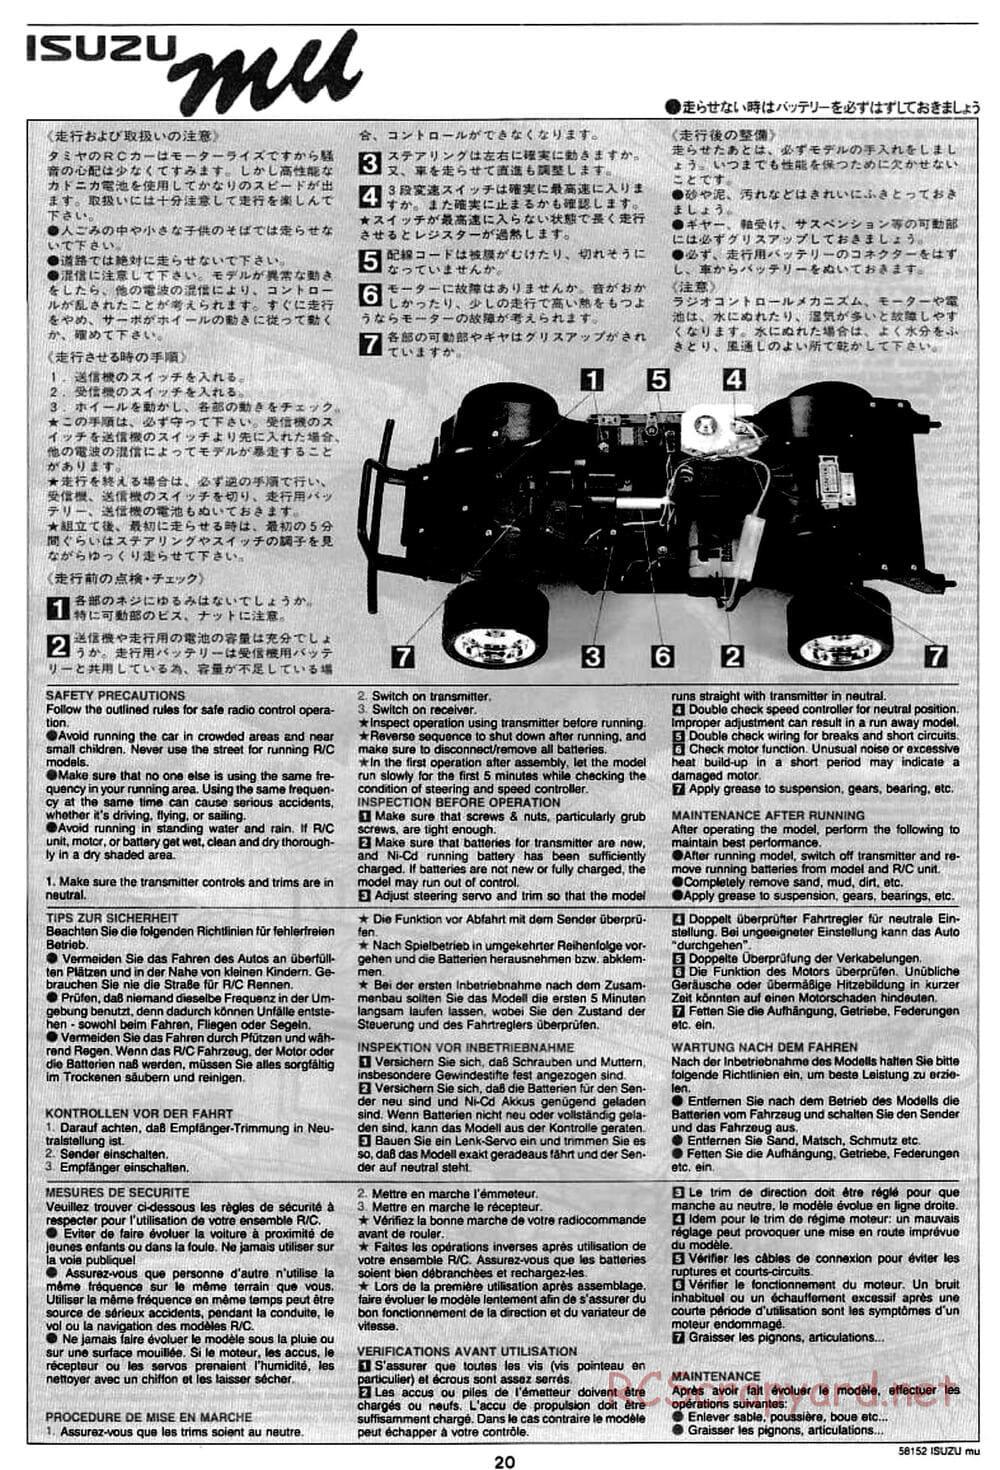 Tamiya - Isuzu Mu - CC-01 Chassis - Manual - Page 20